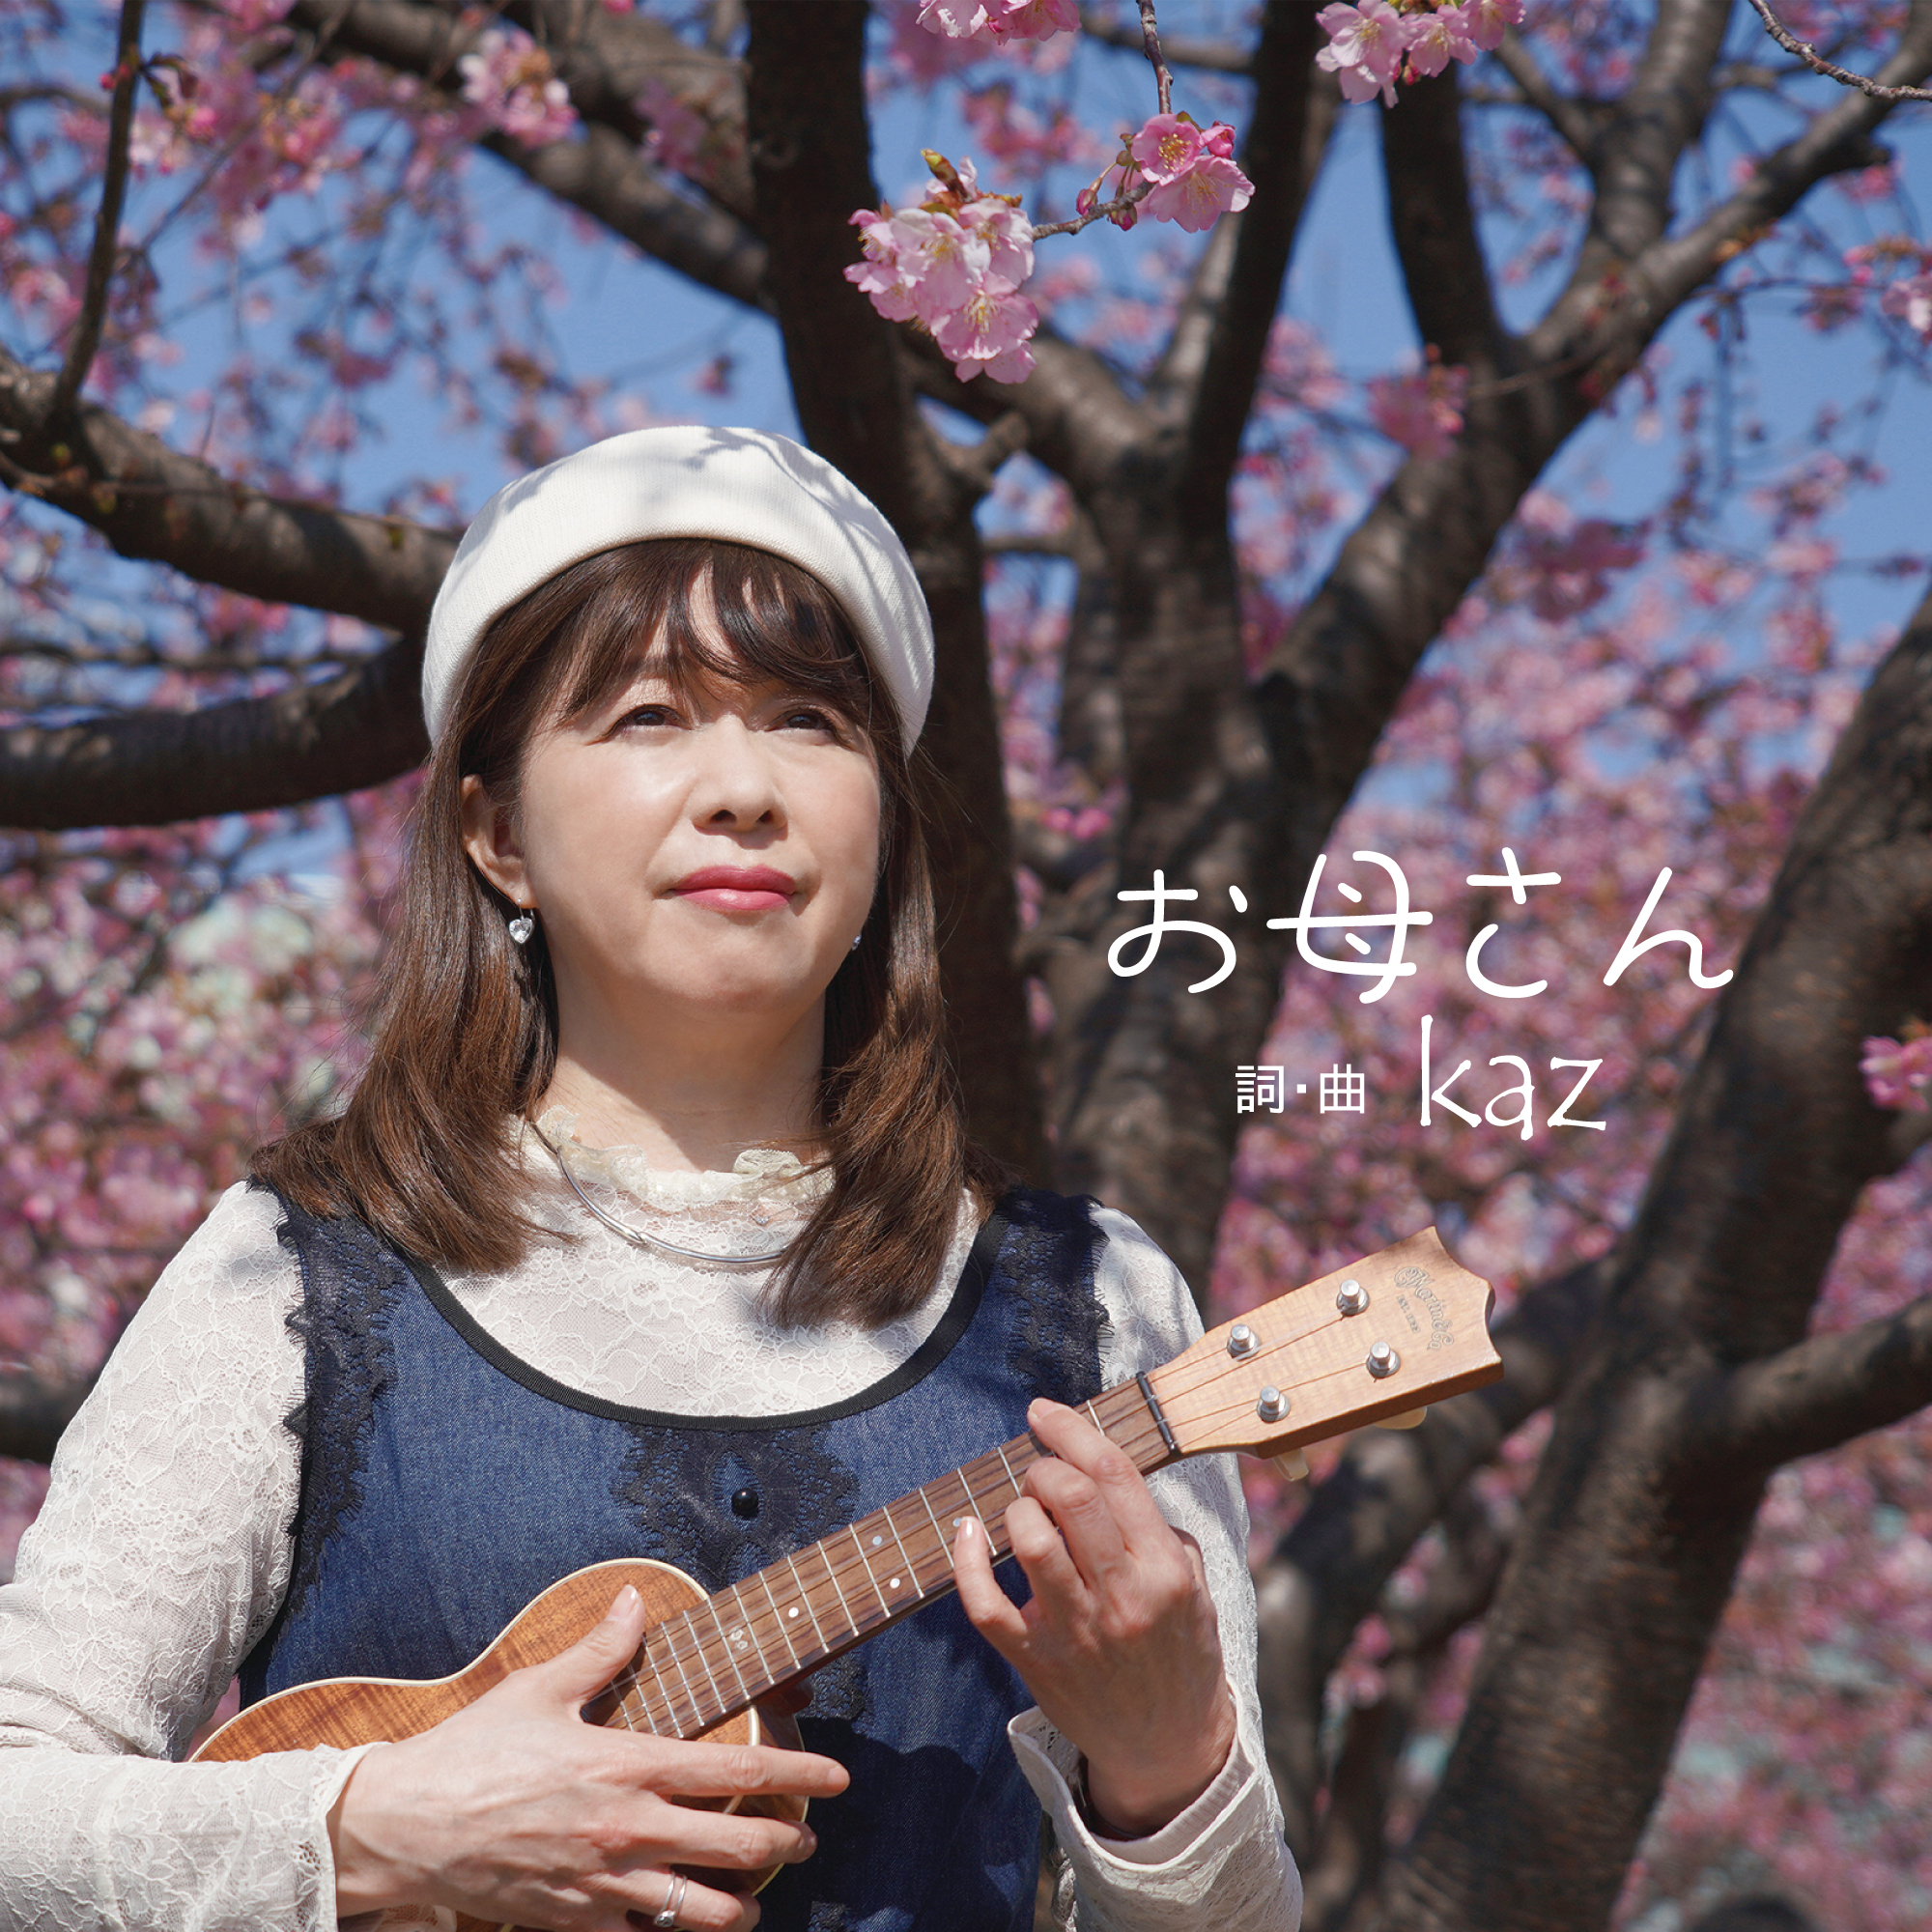 令和3年3月30日 kazセカンドシングルCDをリリース